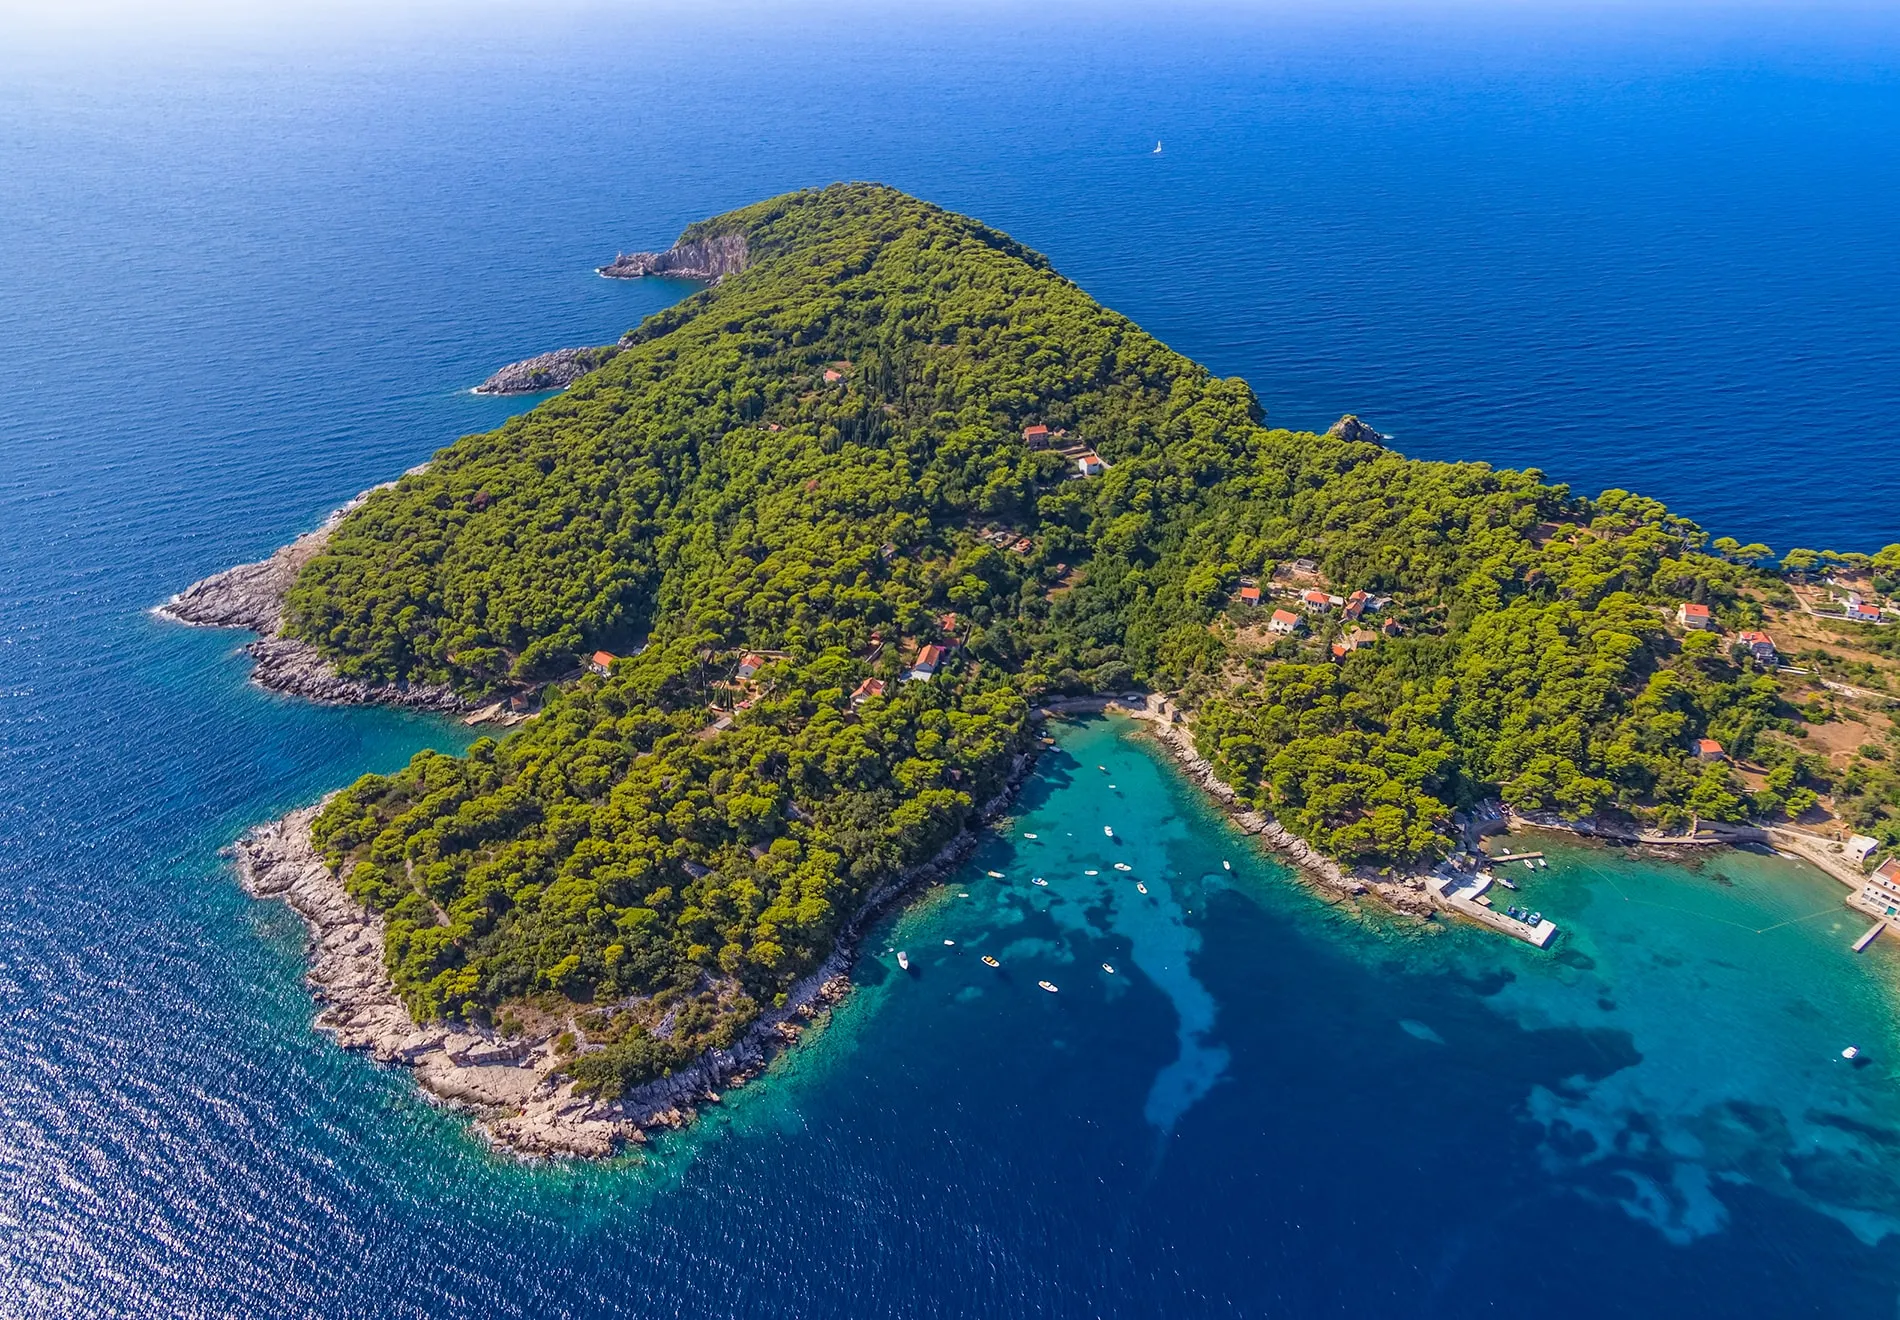 In this blog post, we're spotlighting the premier swimming spots in Dalmatia, Croatia